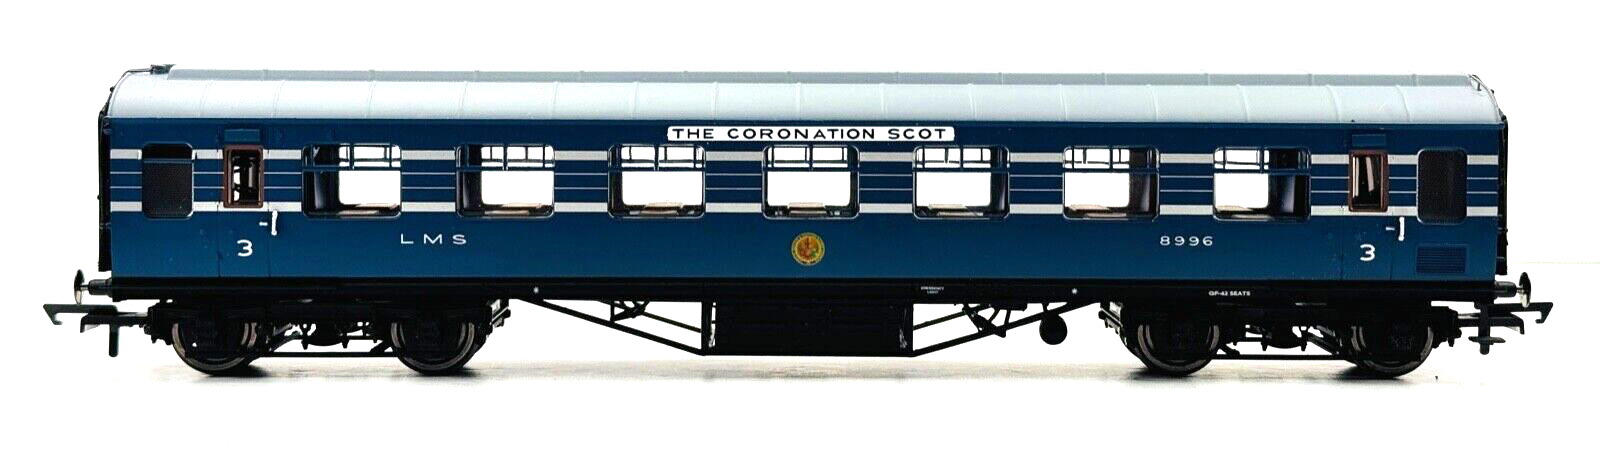 HORNBY 00 GAUGE - R4965B - BLUE CORONATION SCOT COACH '8996' - UNBOXED